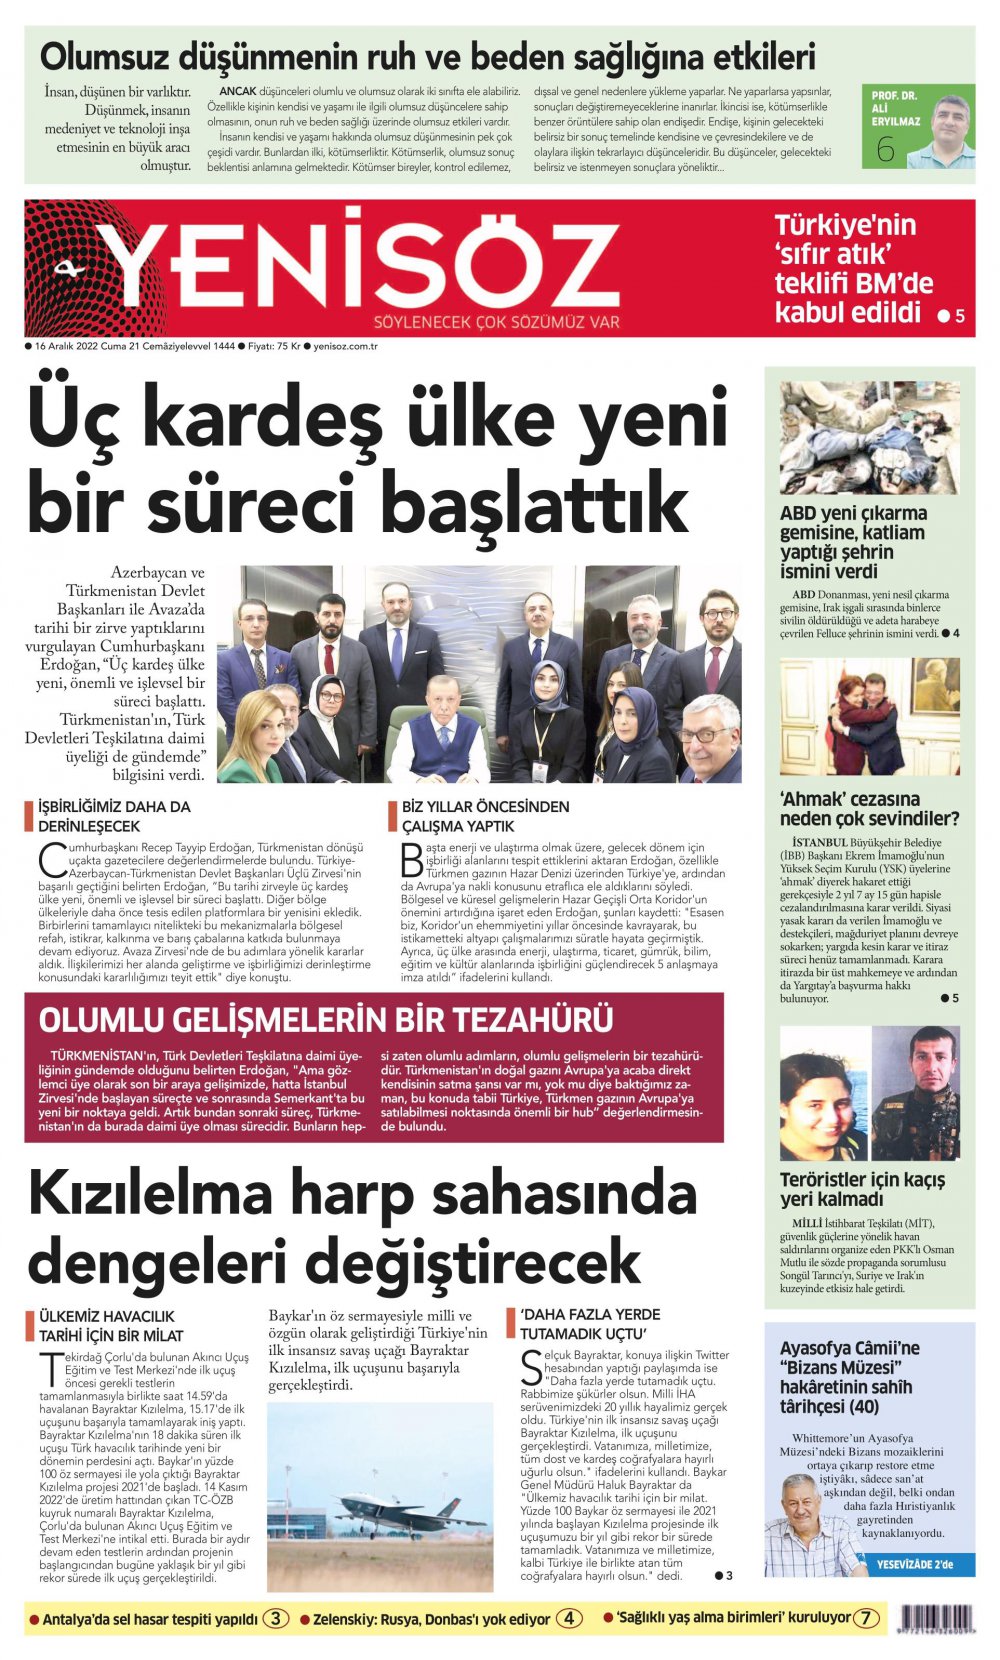 Yeni Söz Gazete Keyfi - Gazete Manşetleri ve 1. sayfaları - Gazete oku (16 Aralık 2022 Cuma)